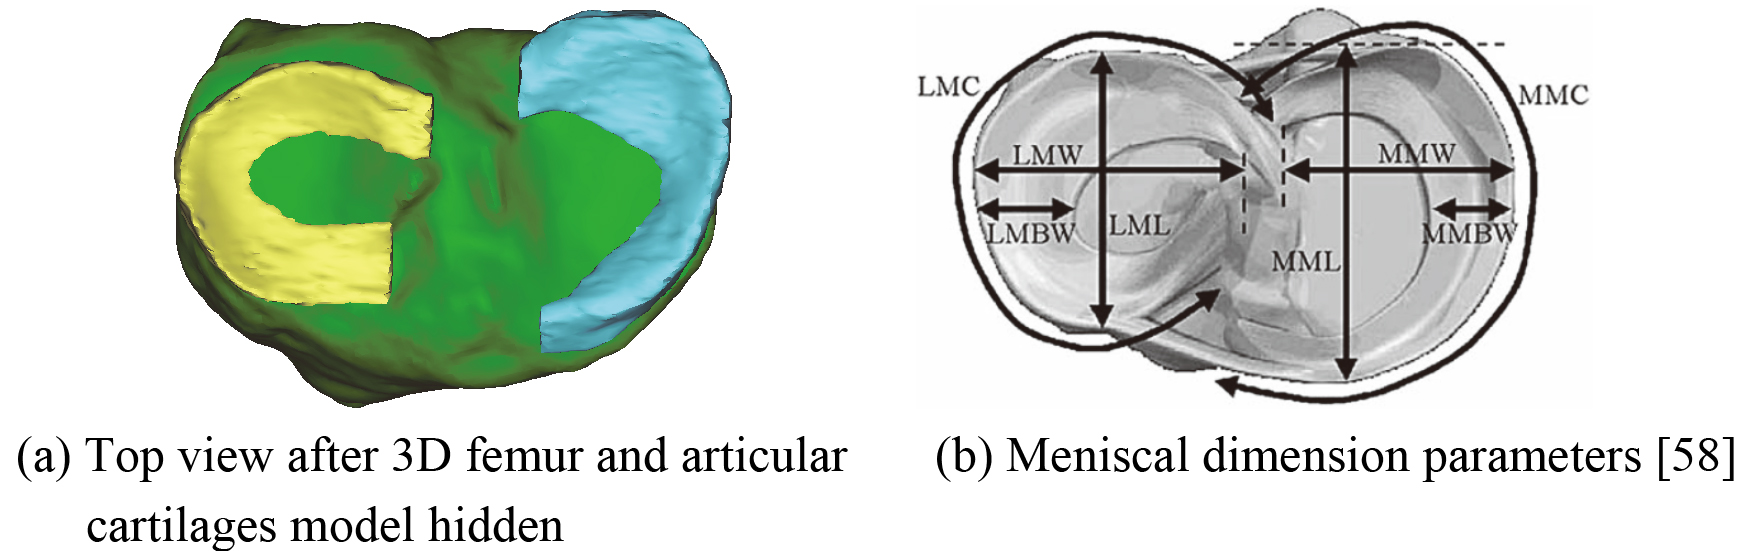 The main dimension parameters of menisci.